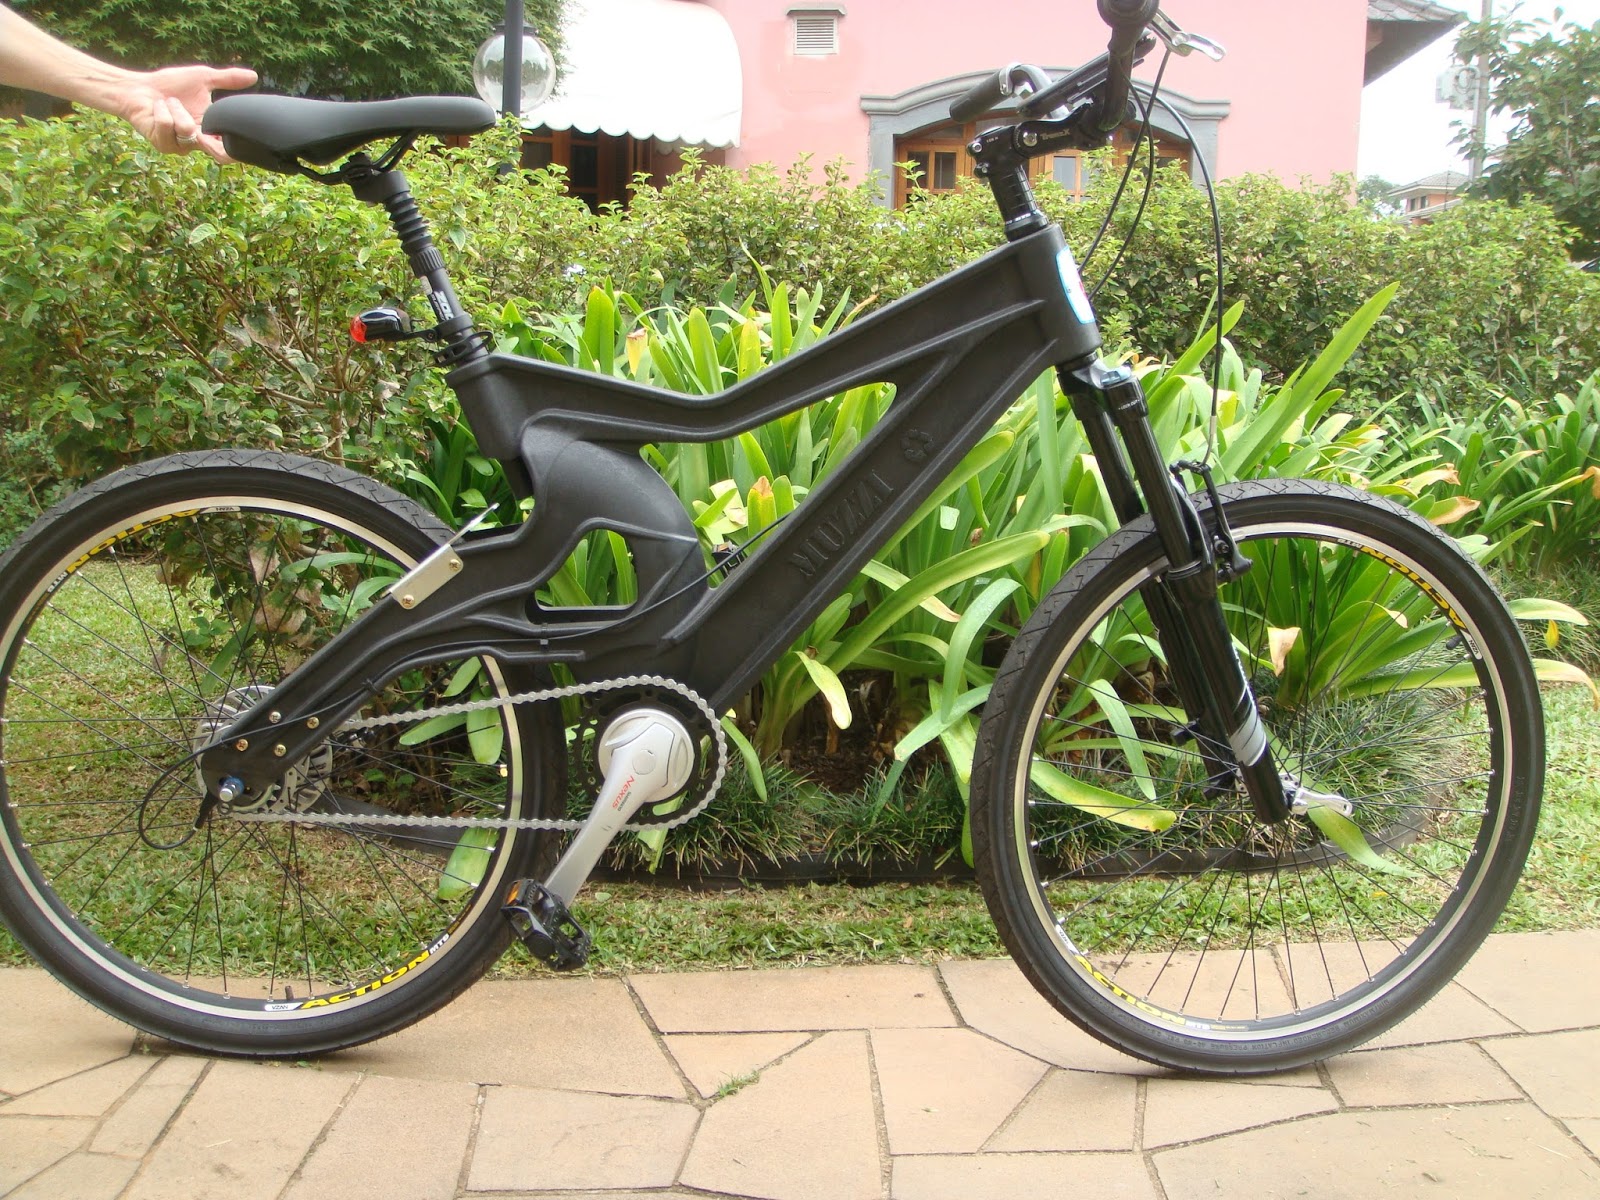 Muzzicycle: a bicicleta de plástico reciclado e produzida no Brasil |  CASA.COM.BR